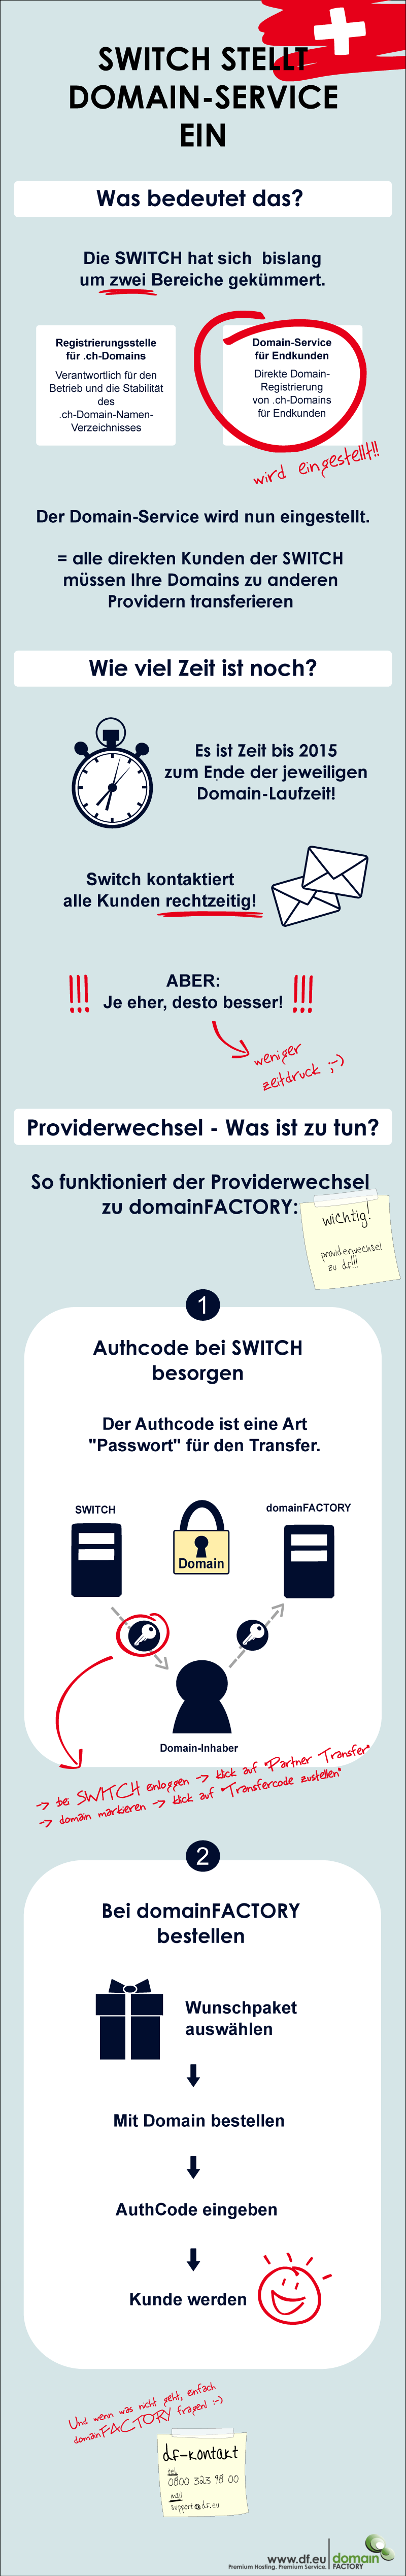 SWITCH stellt 2015 den Domain-Service ein